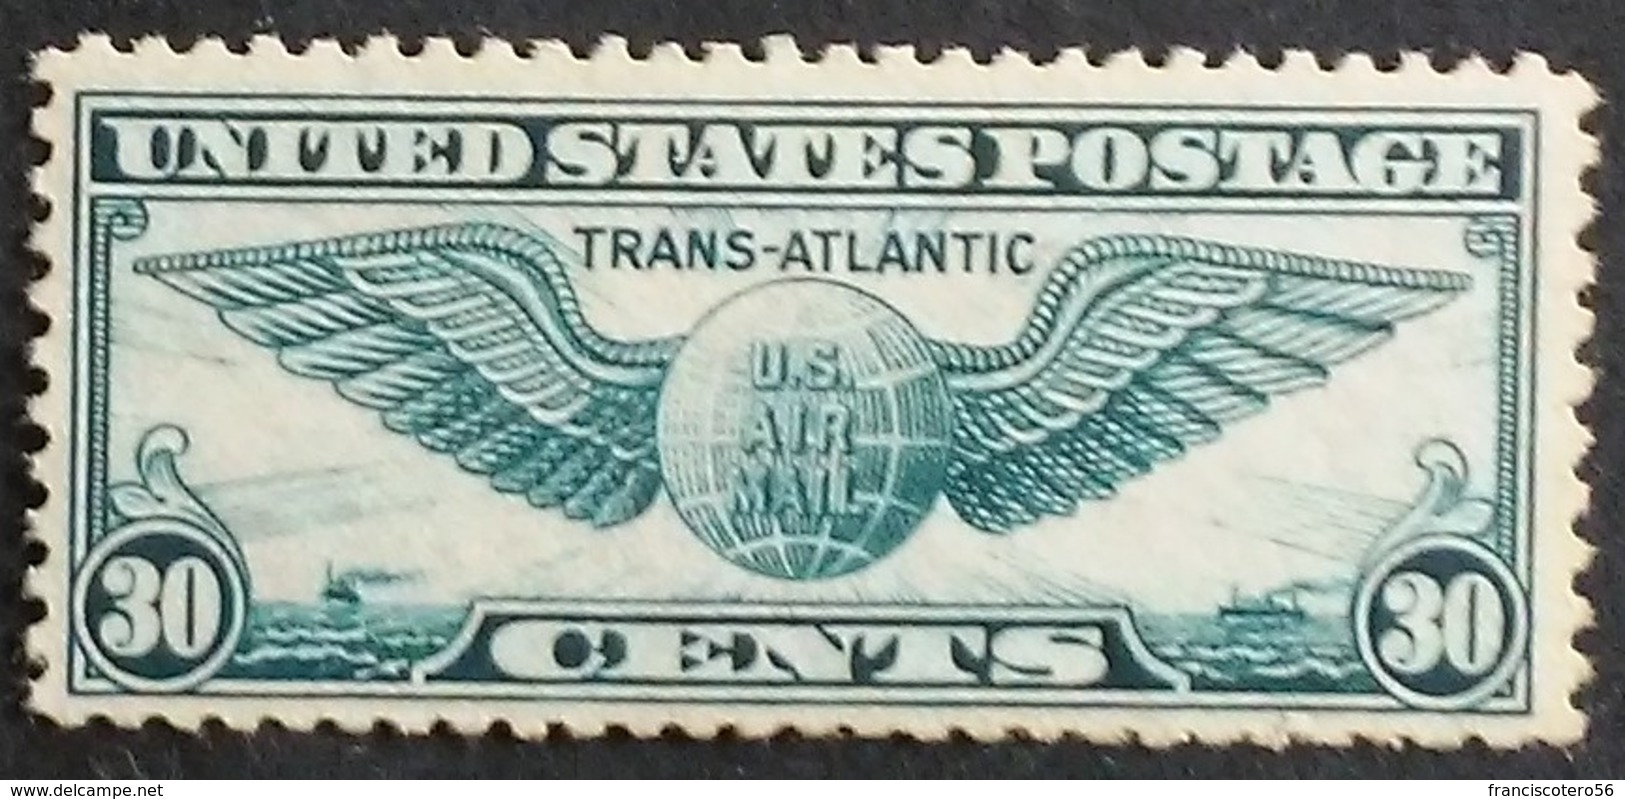 Estados - Unidos: Año. 1939 - Av. (1º- Vuelo Trans - Atlantico. Nueva - York. Marsella). - 1b. 1918-1940 Nuovi